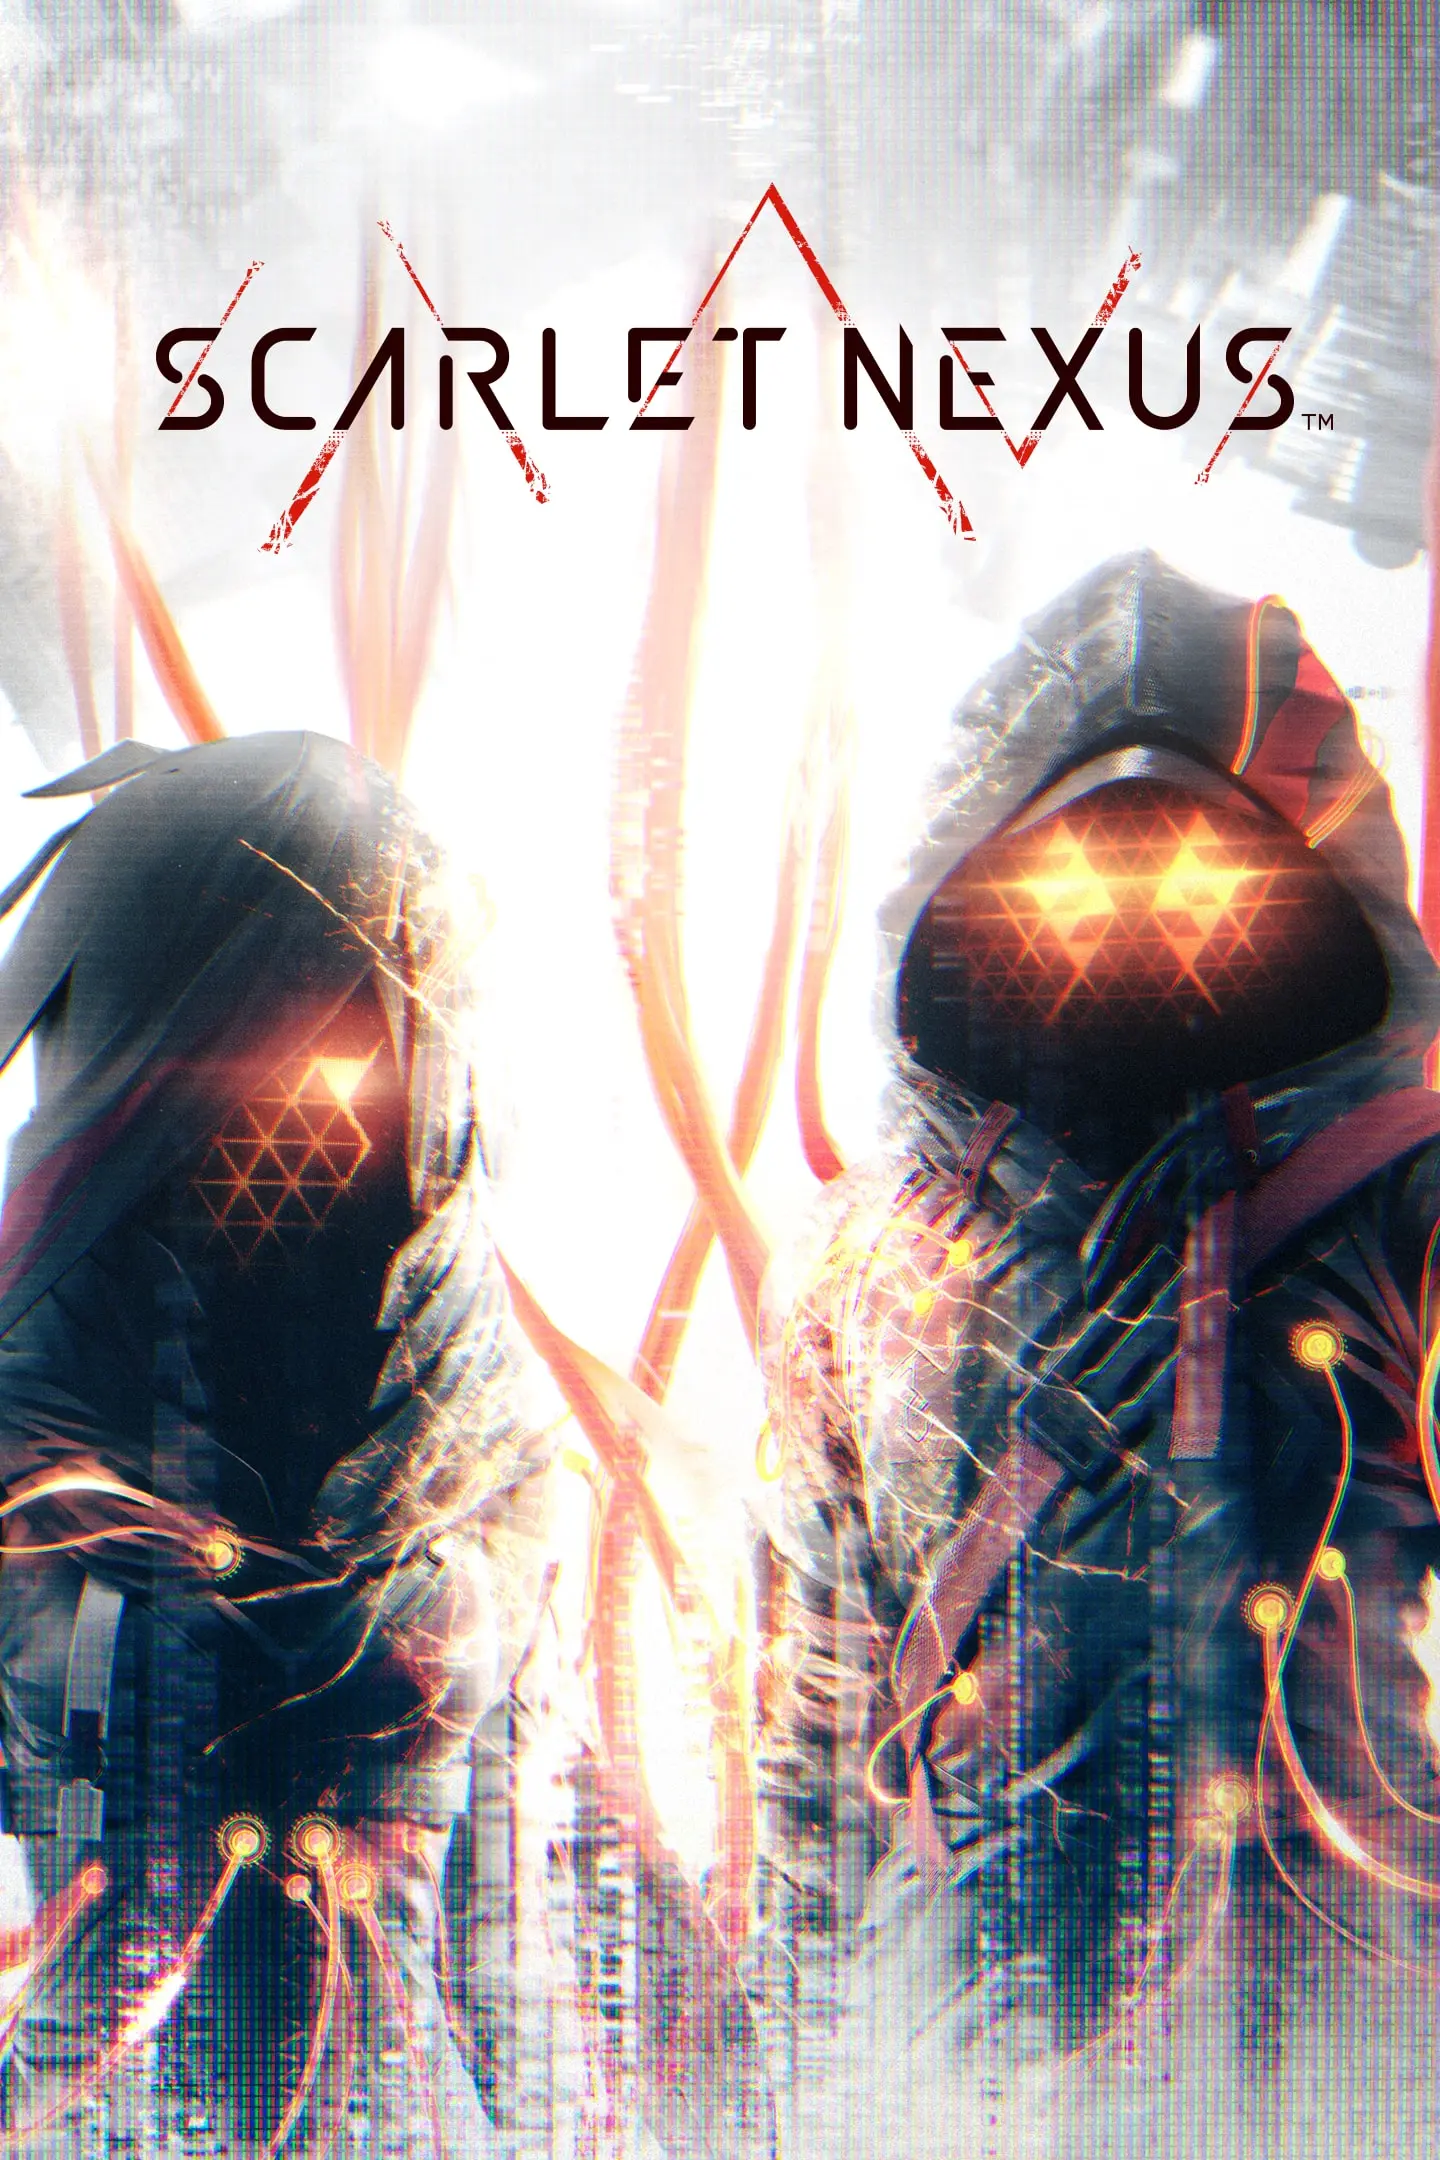 Scarlet Nexus (AR) (Xbox One / Xbox Series X|S) - Xbox Live - Digital Code